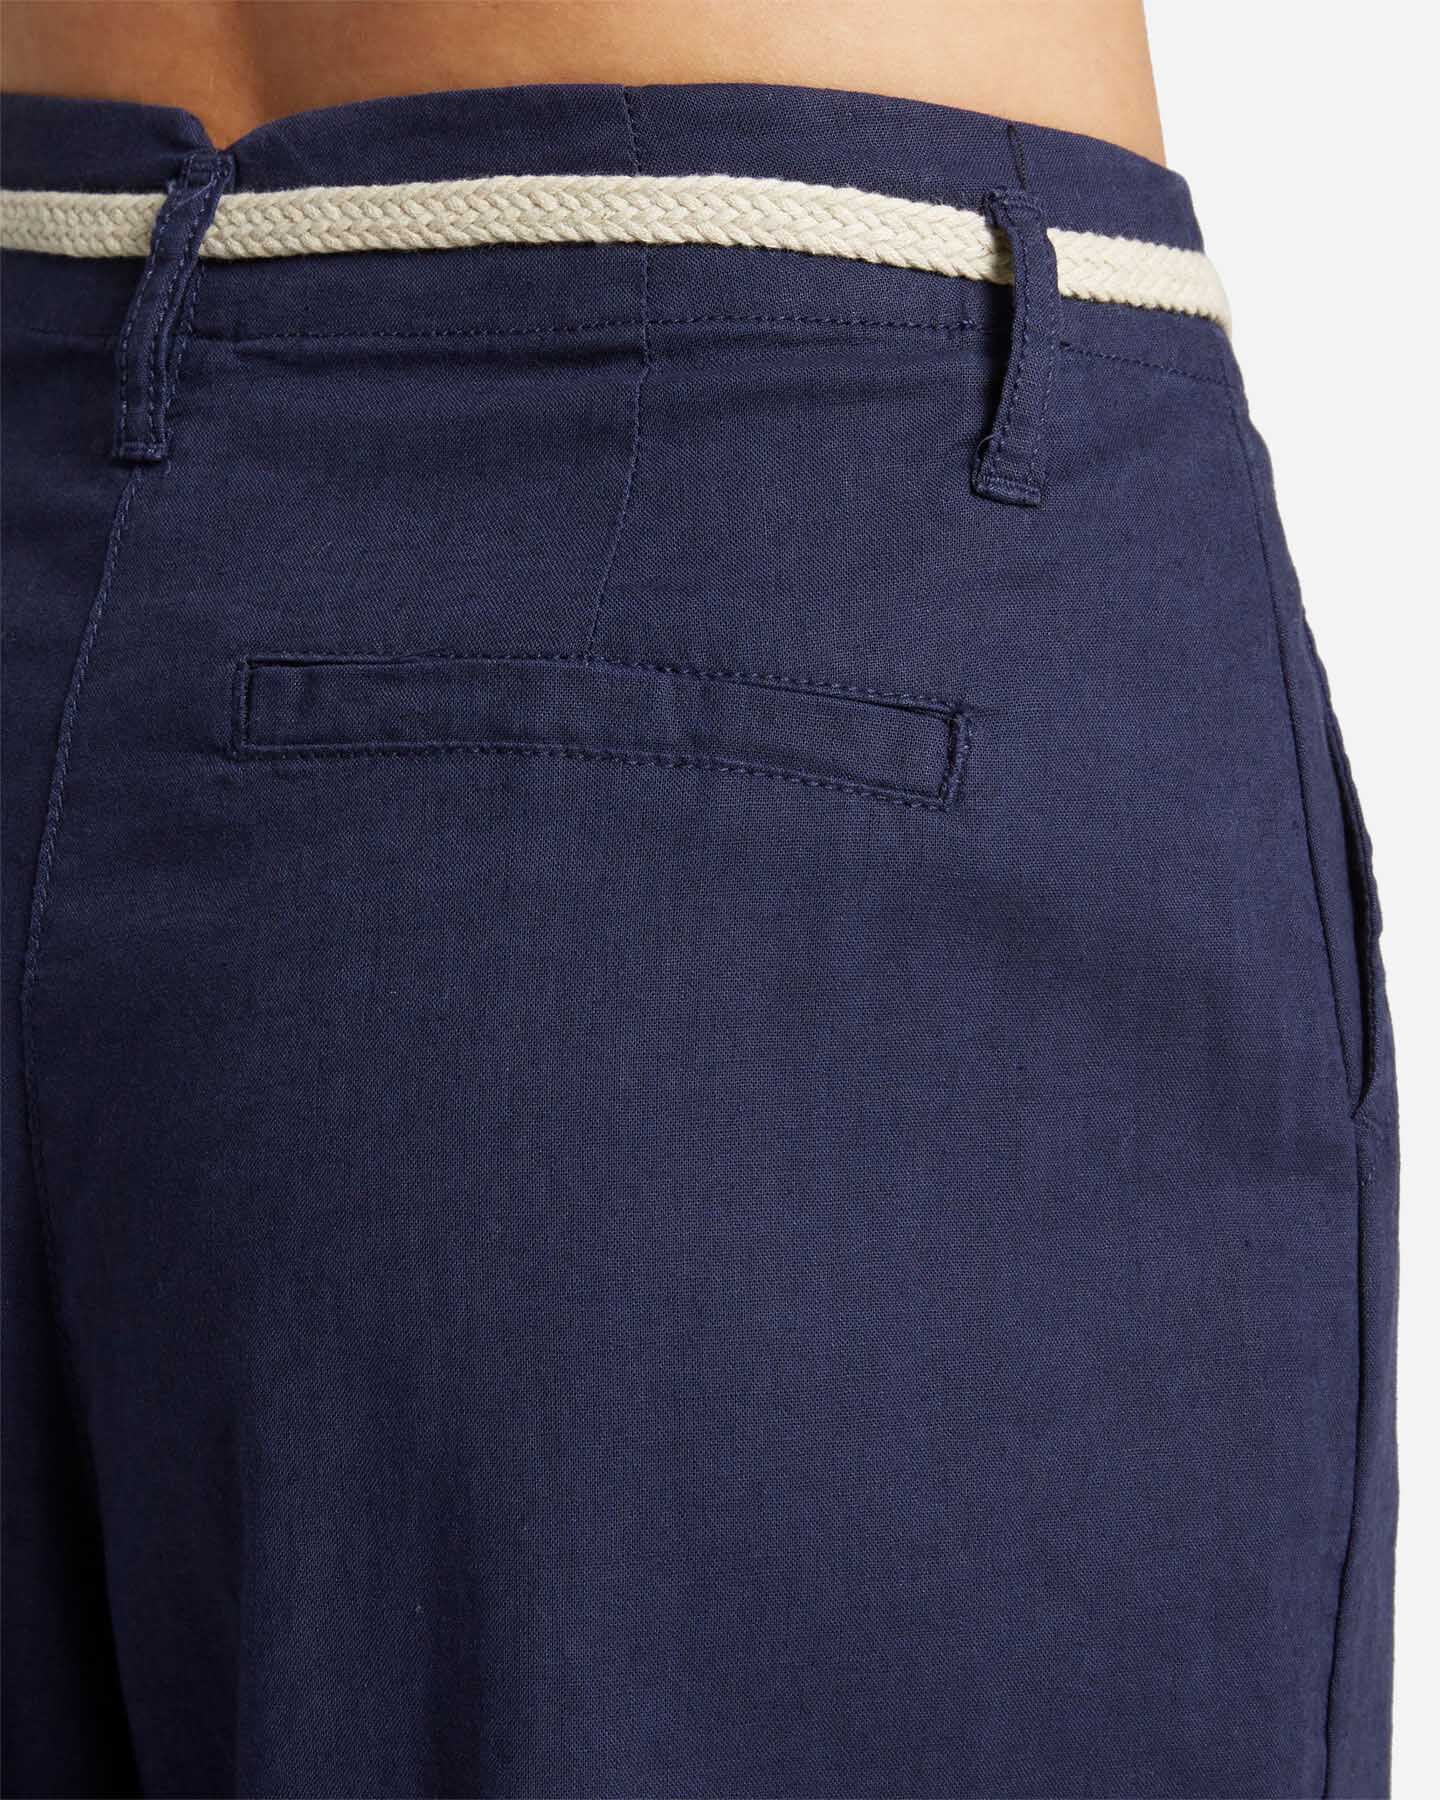  Pantalone DACK'S URBAN W S4129740|519|40 scatto 3